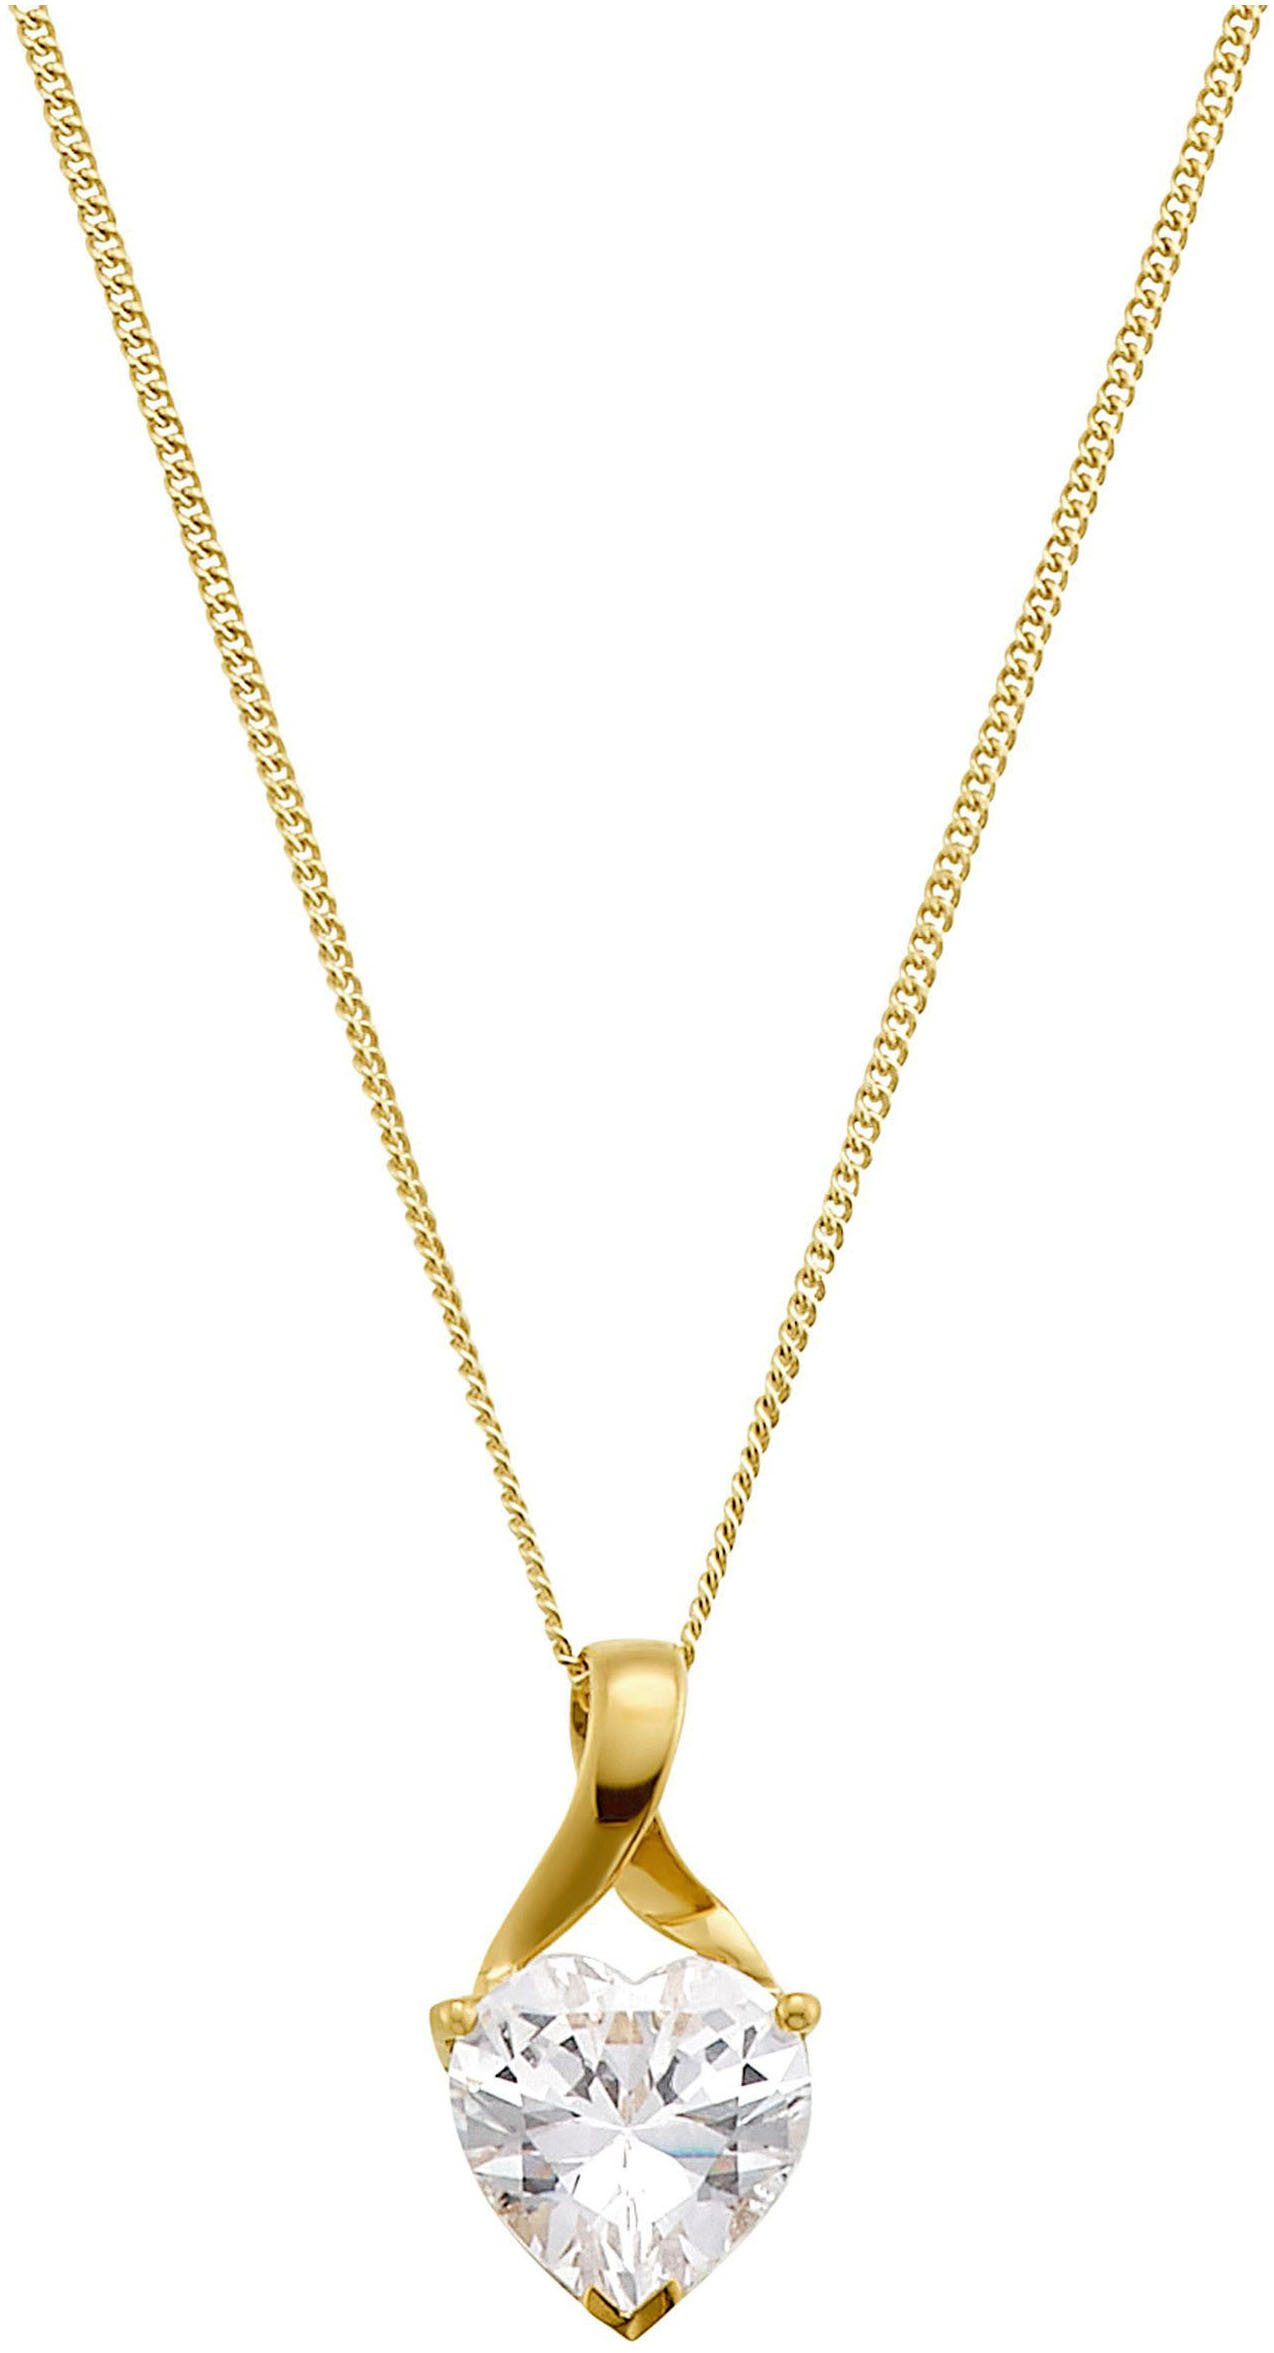 Amor Kette mit Anhänger Schmuck Geschenk Halskette Herz LIEBE 2014209 Gold 375, mit Zirkonia (synth)